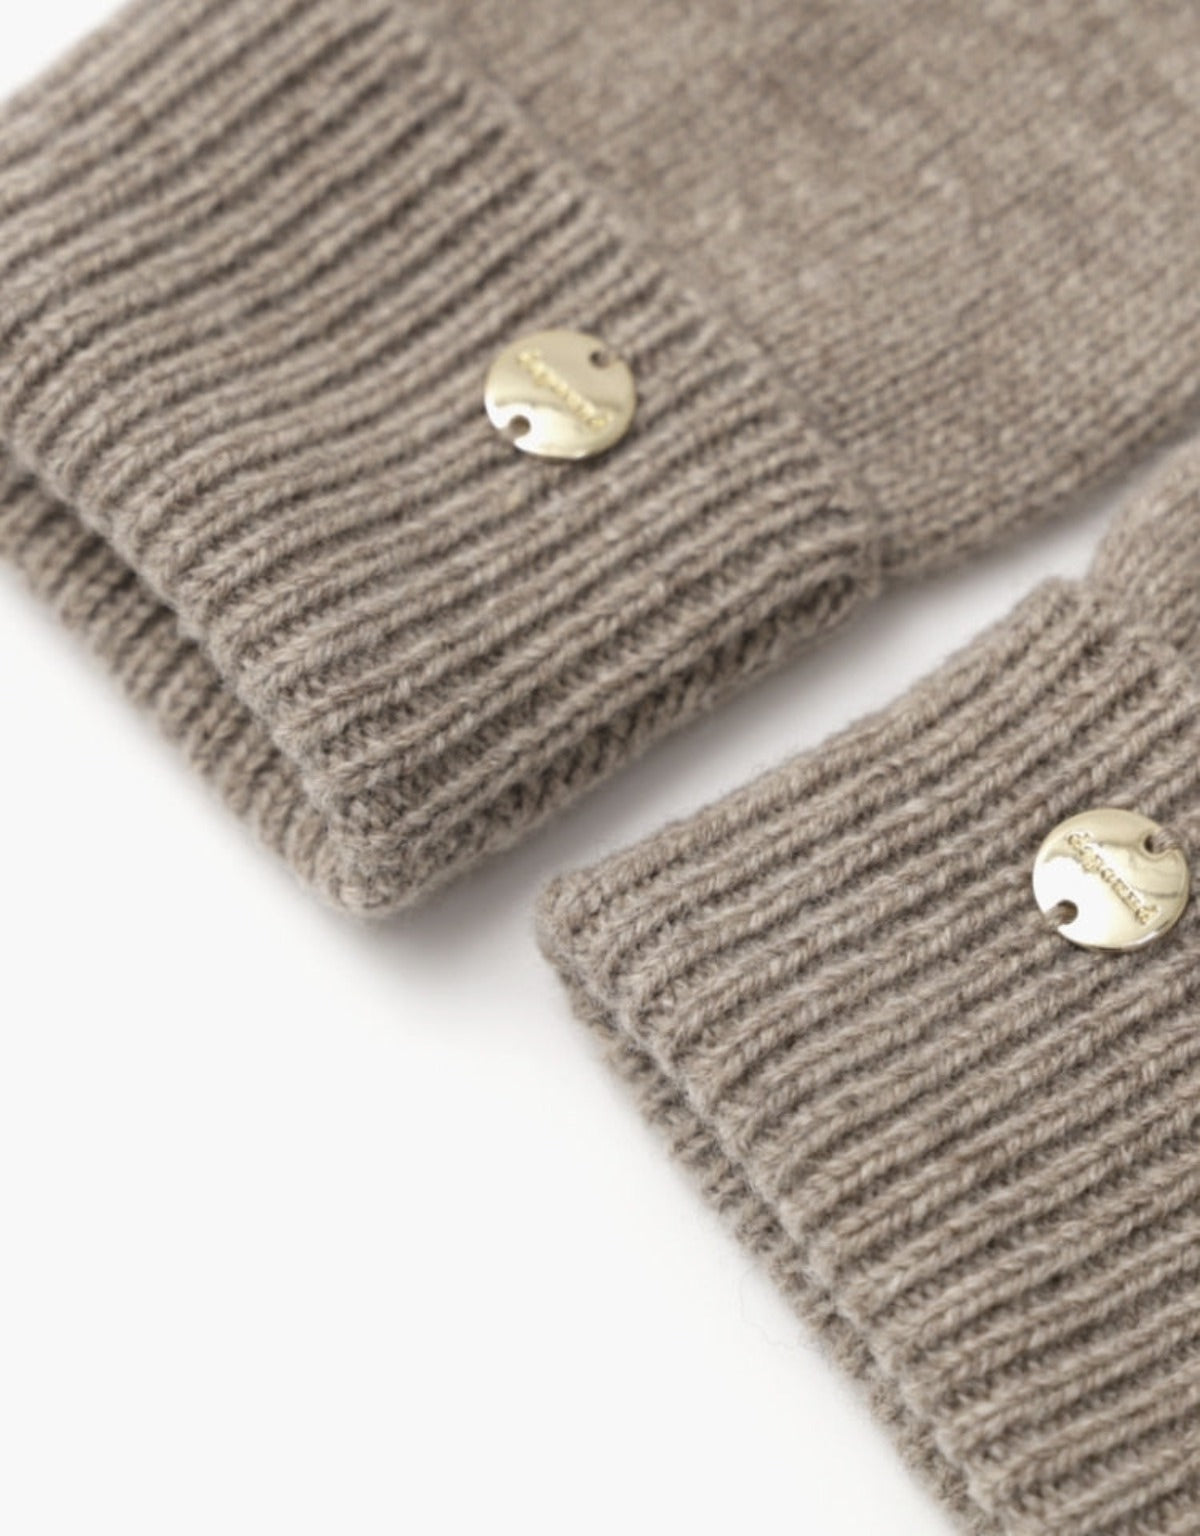 Wool Knit Gloves In Oatmeal